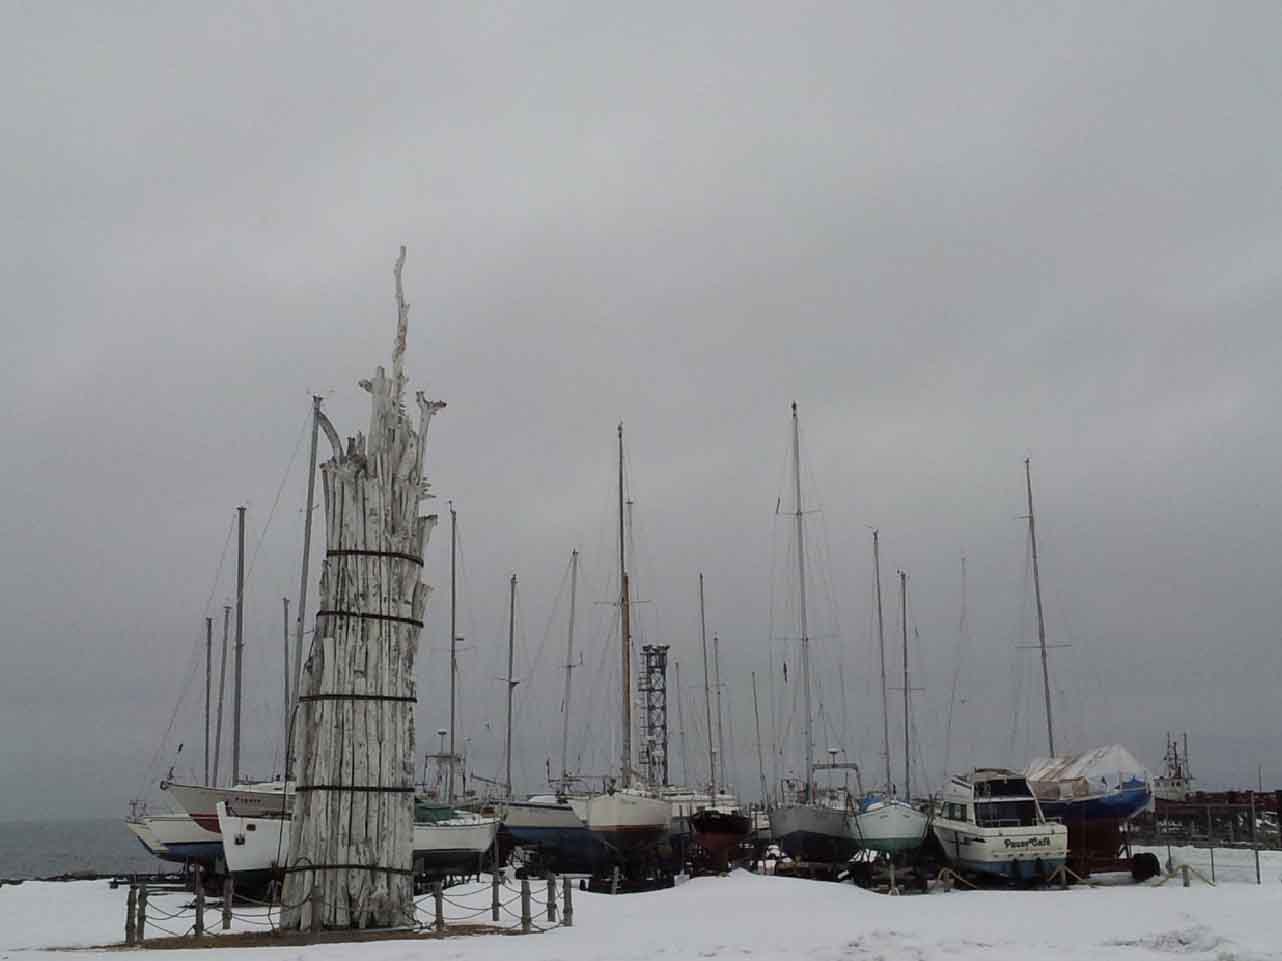 Sculpture et bateaux, Ste-Anne-des-Monts, Québec